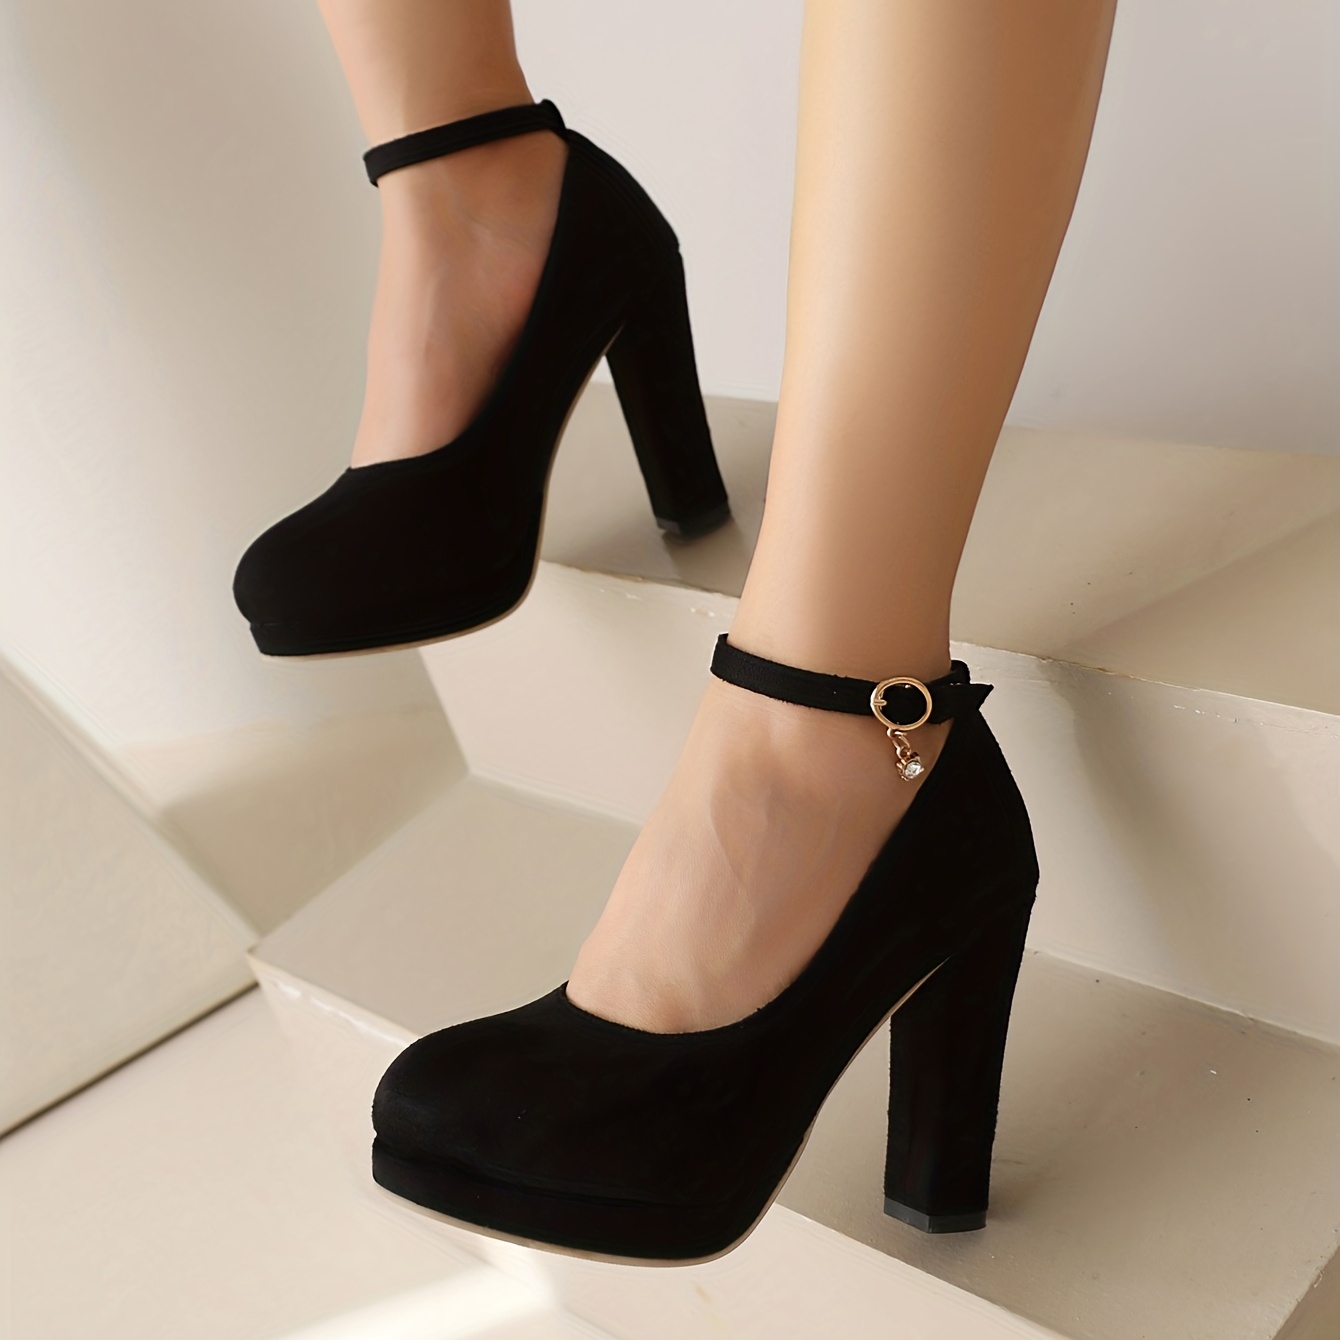 Black Closed Toe Heels - Macy's